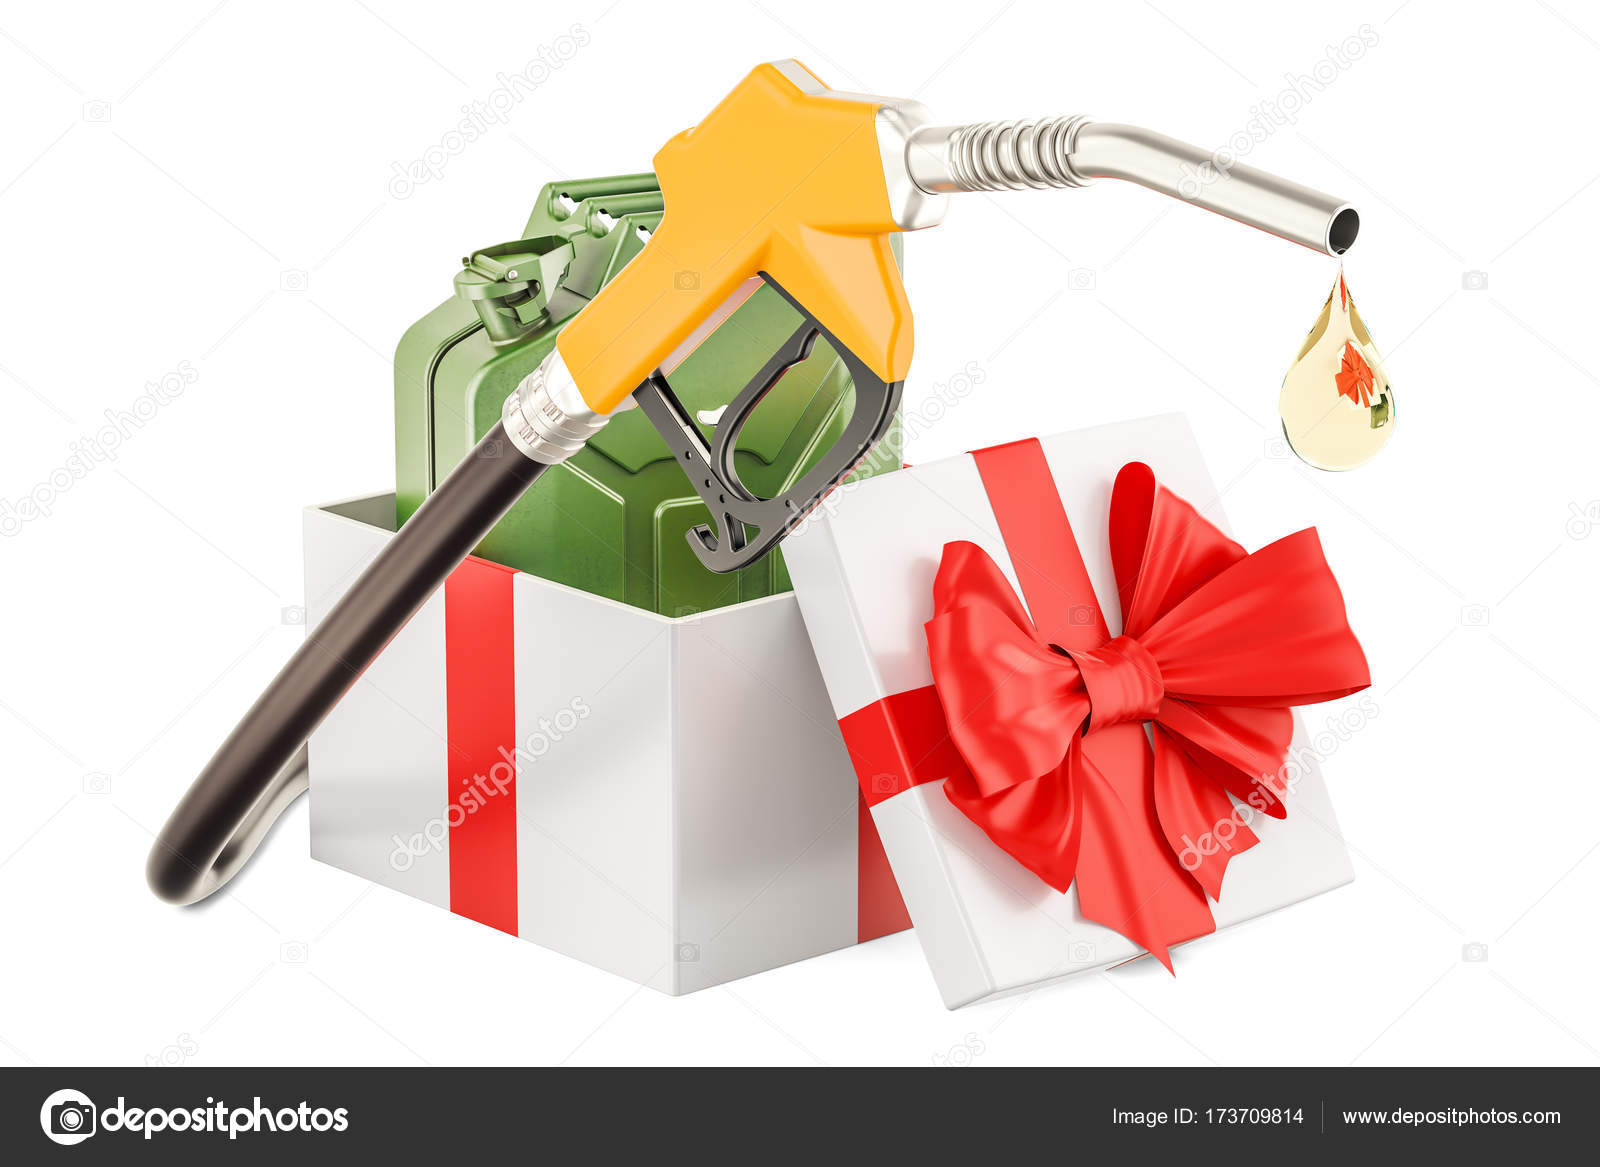 Benzinpumpe mit Kanister im Geschenkkarton, Geschenkkonzept.  3d-Stockillustration von ©alexlmx #173709814